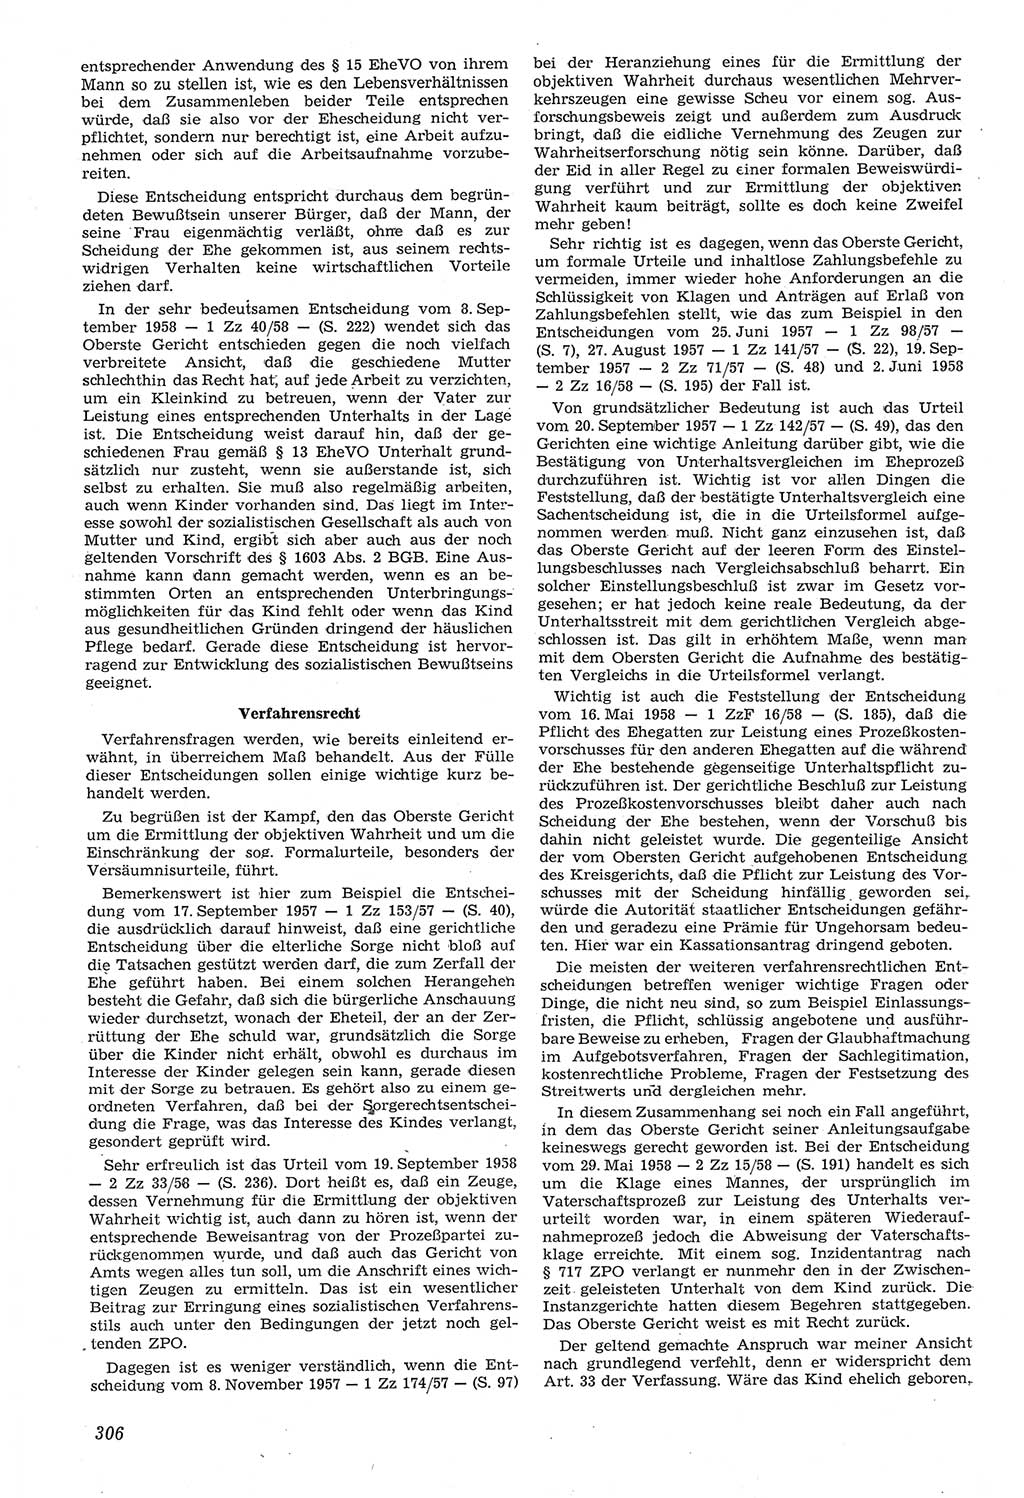 Neue Justiz (NJ), Zeitschrift für Recht und Rechtswissenschaft [Deutsche Demokratische Republik (DDR)], 14. Jahrgang 1960, Seite 306 (NJ DDR 1960, S. 306)